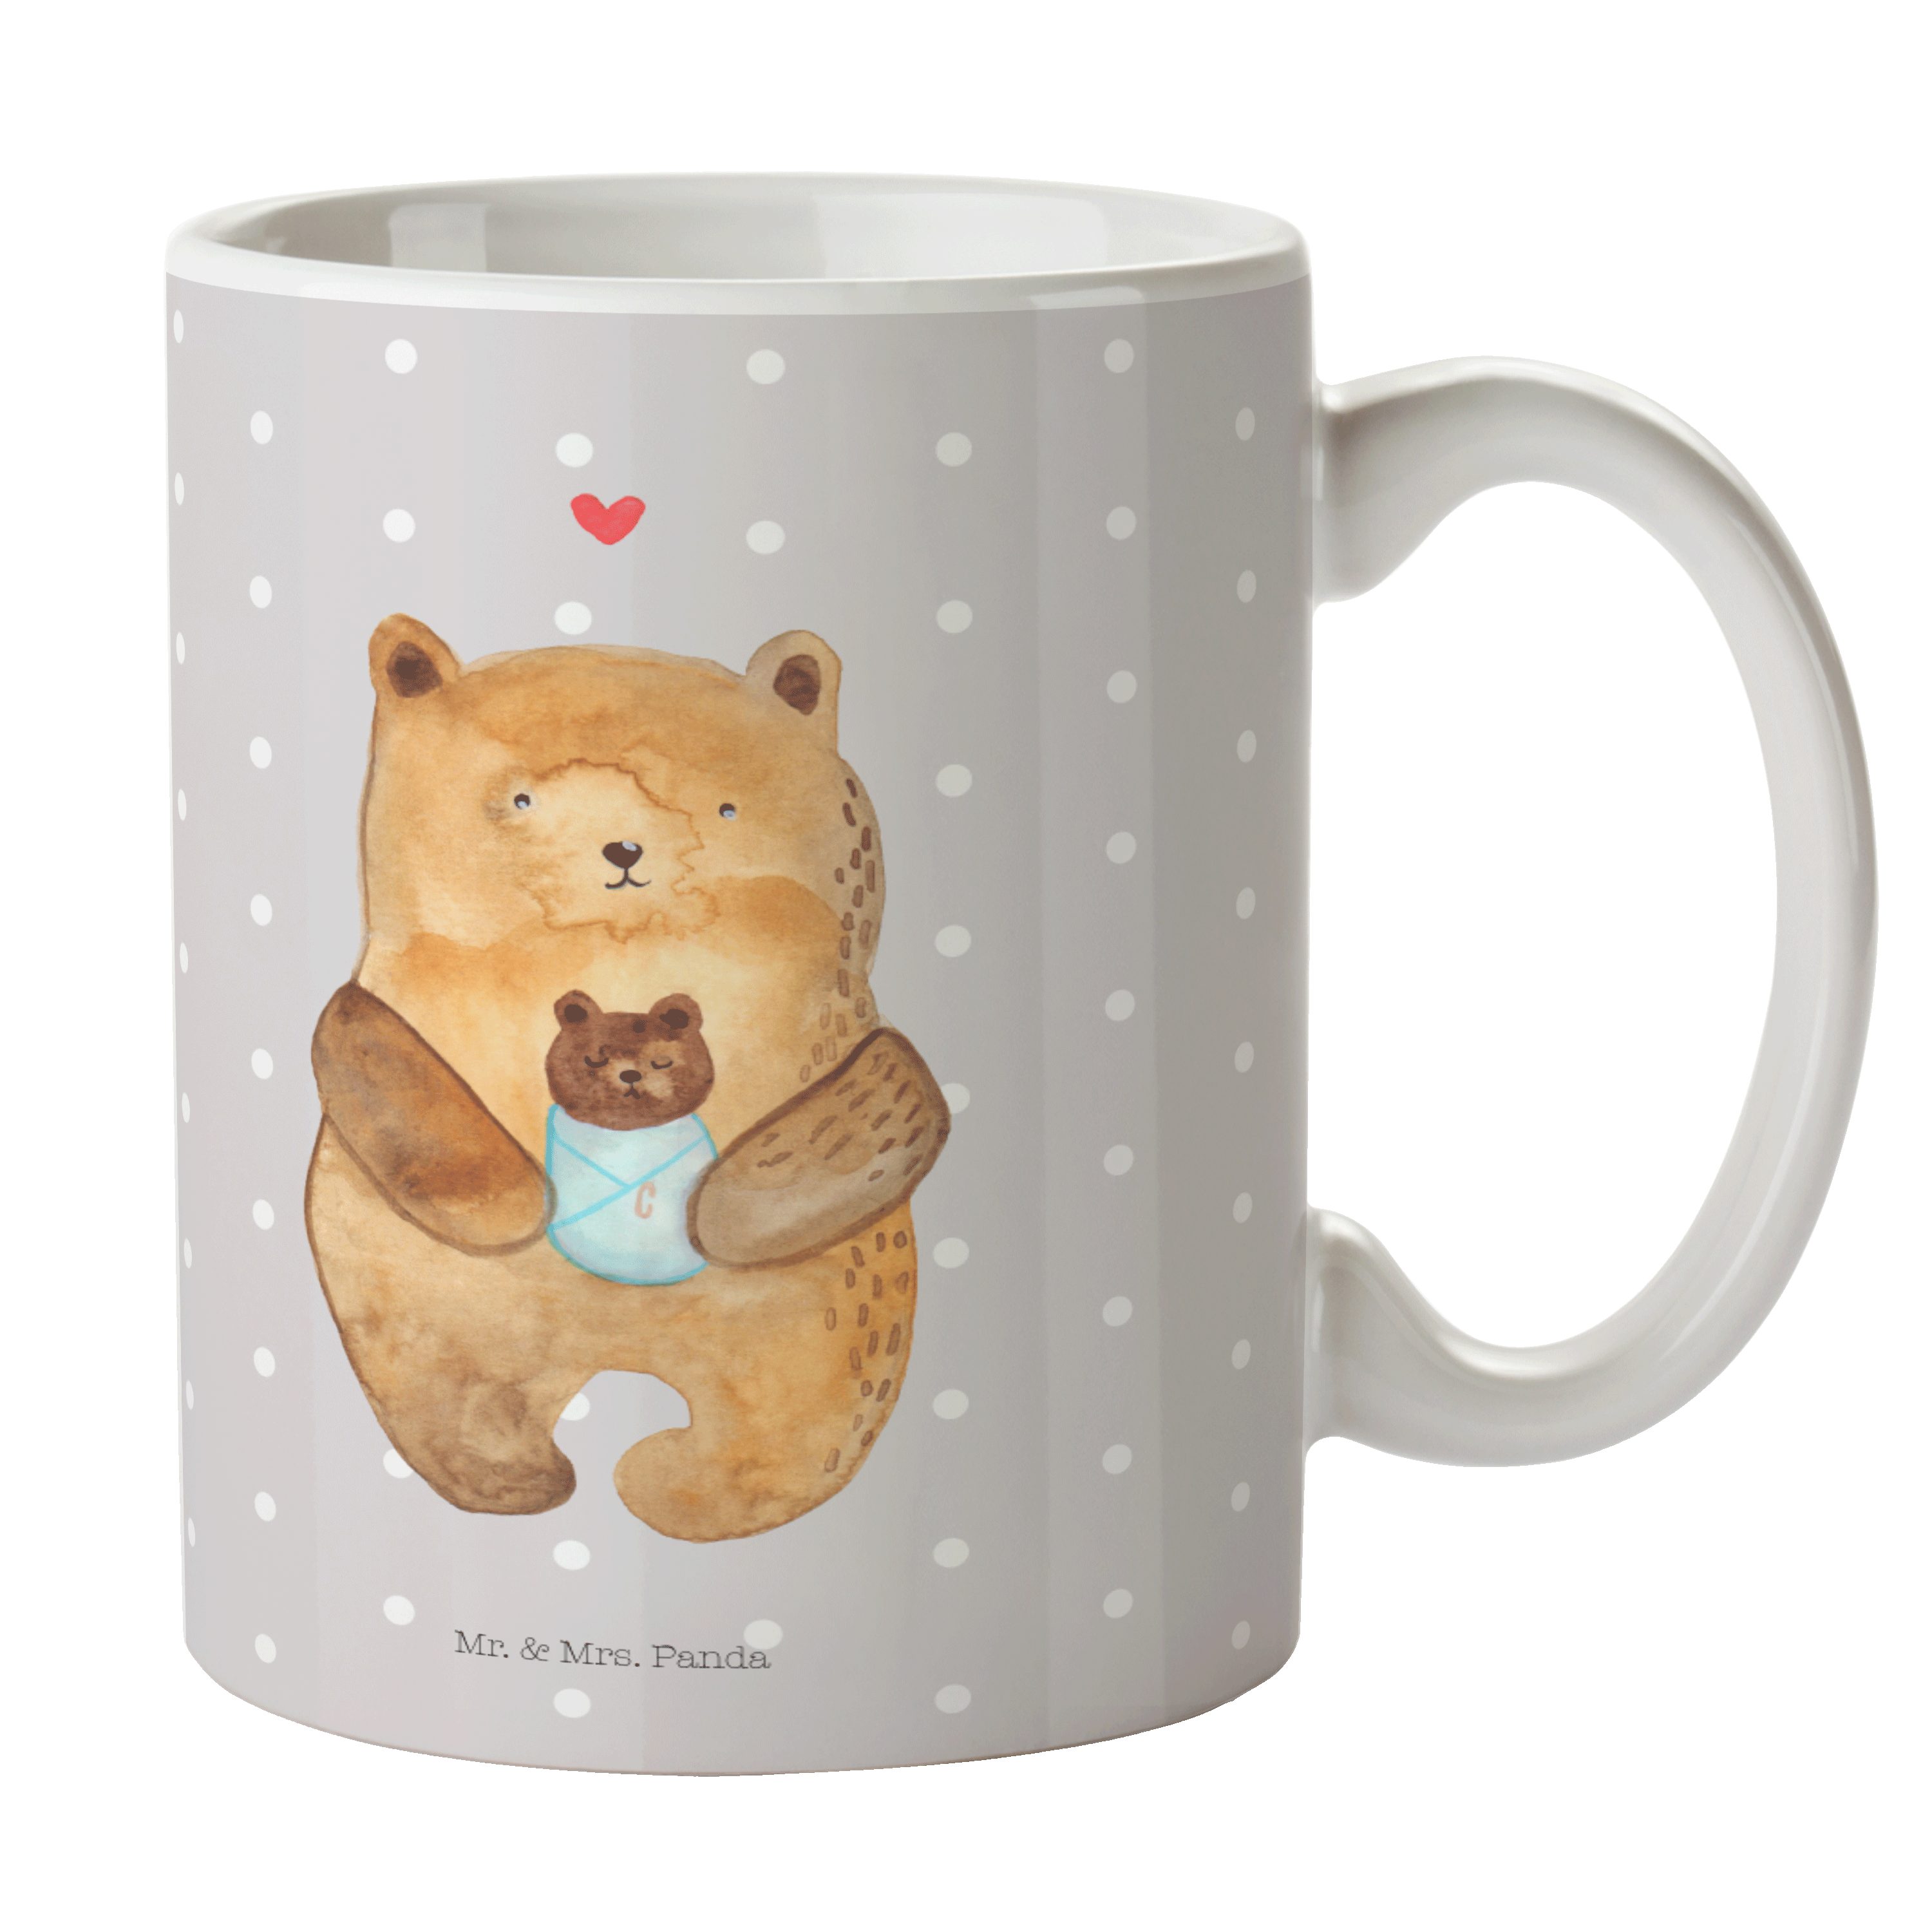 Mr. & Mrs. Panda Tasse Bär mit Baby - Grau Pastell - Geschenk, Nichte, Teebecher, Teddy, Bec, Keramik